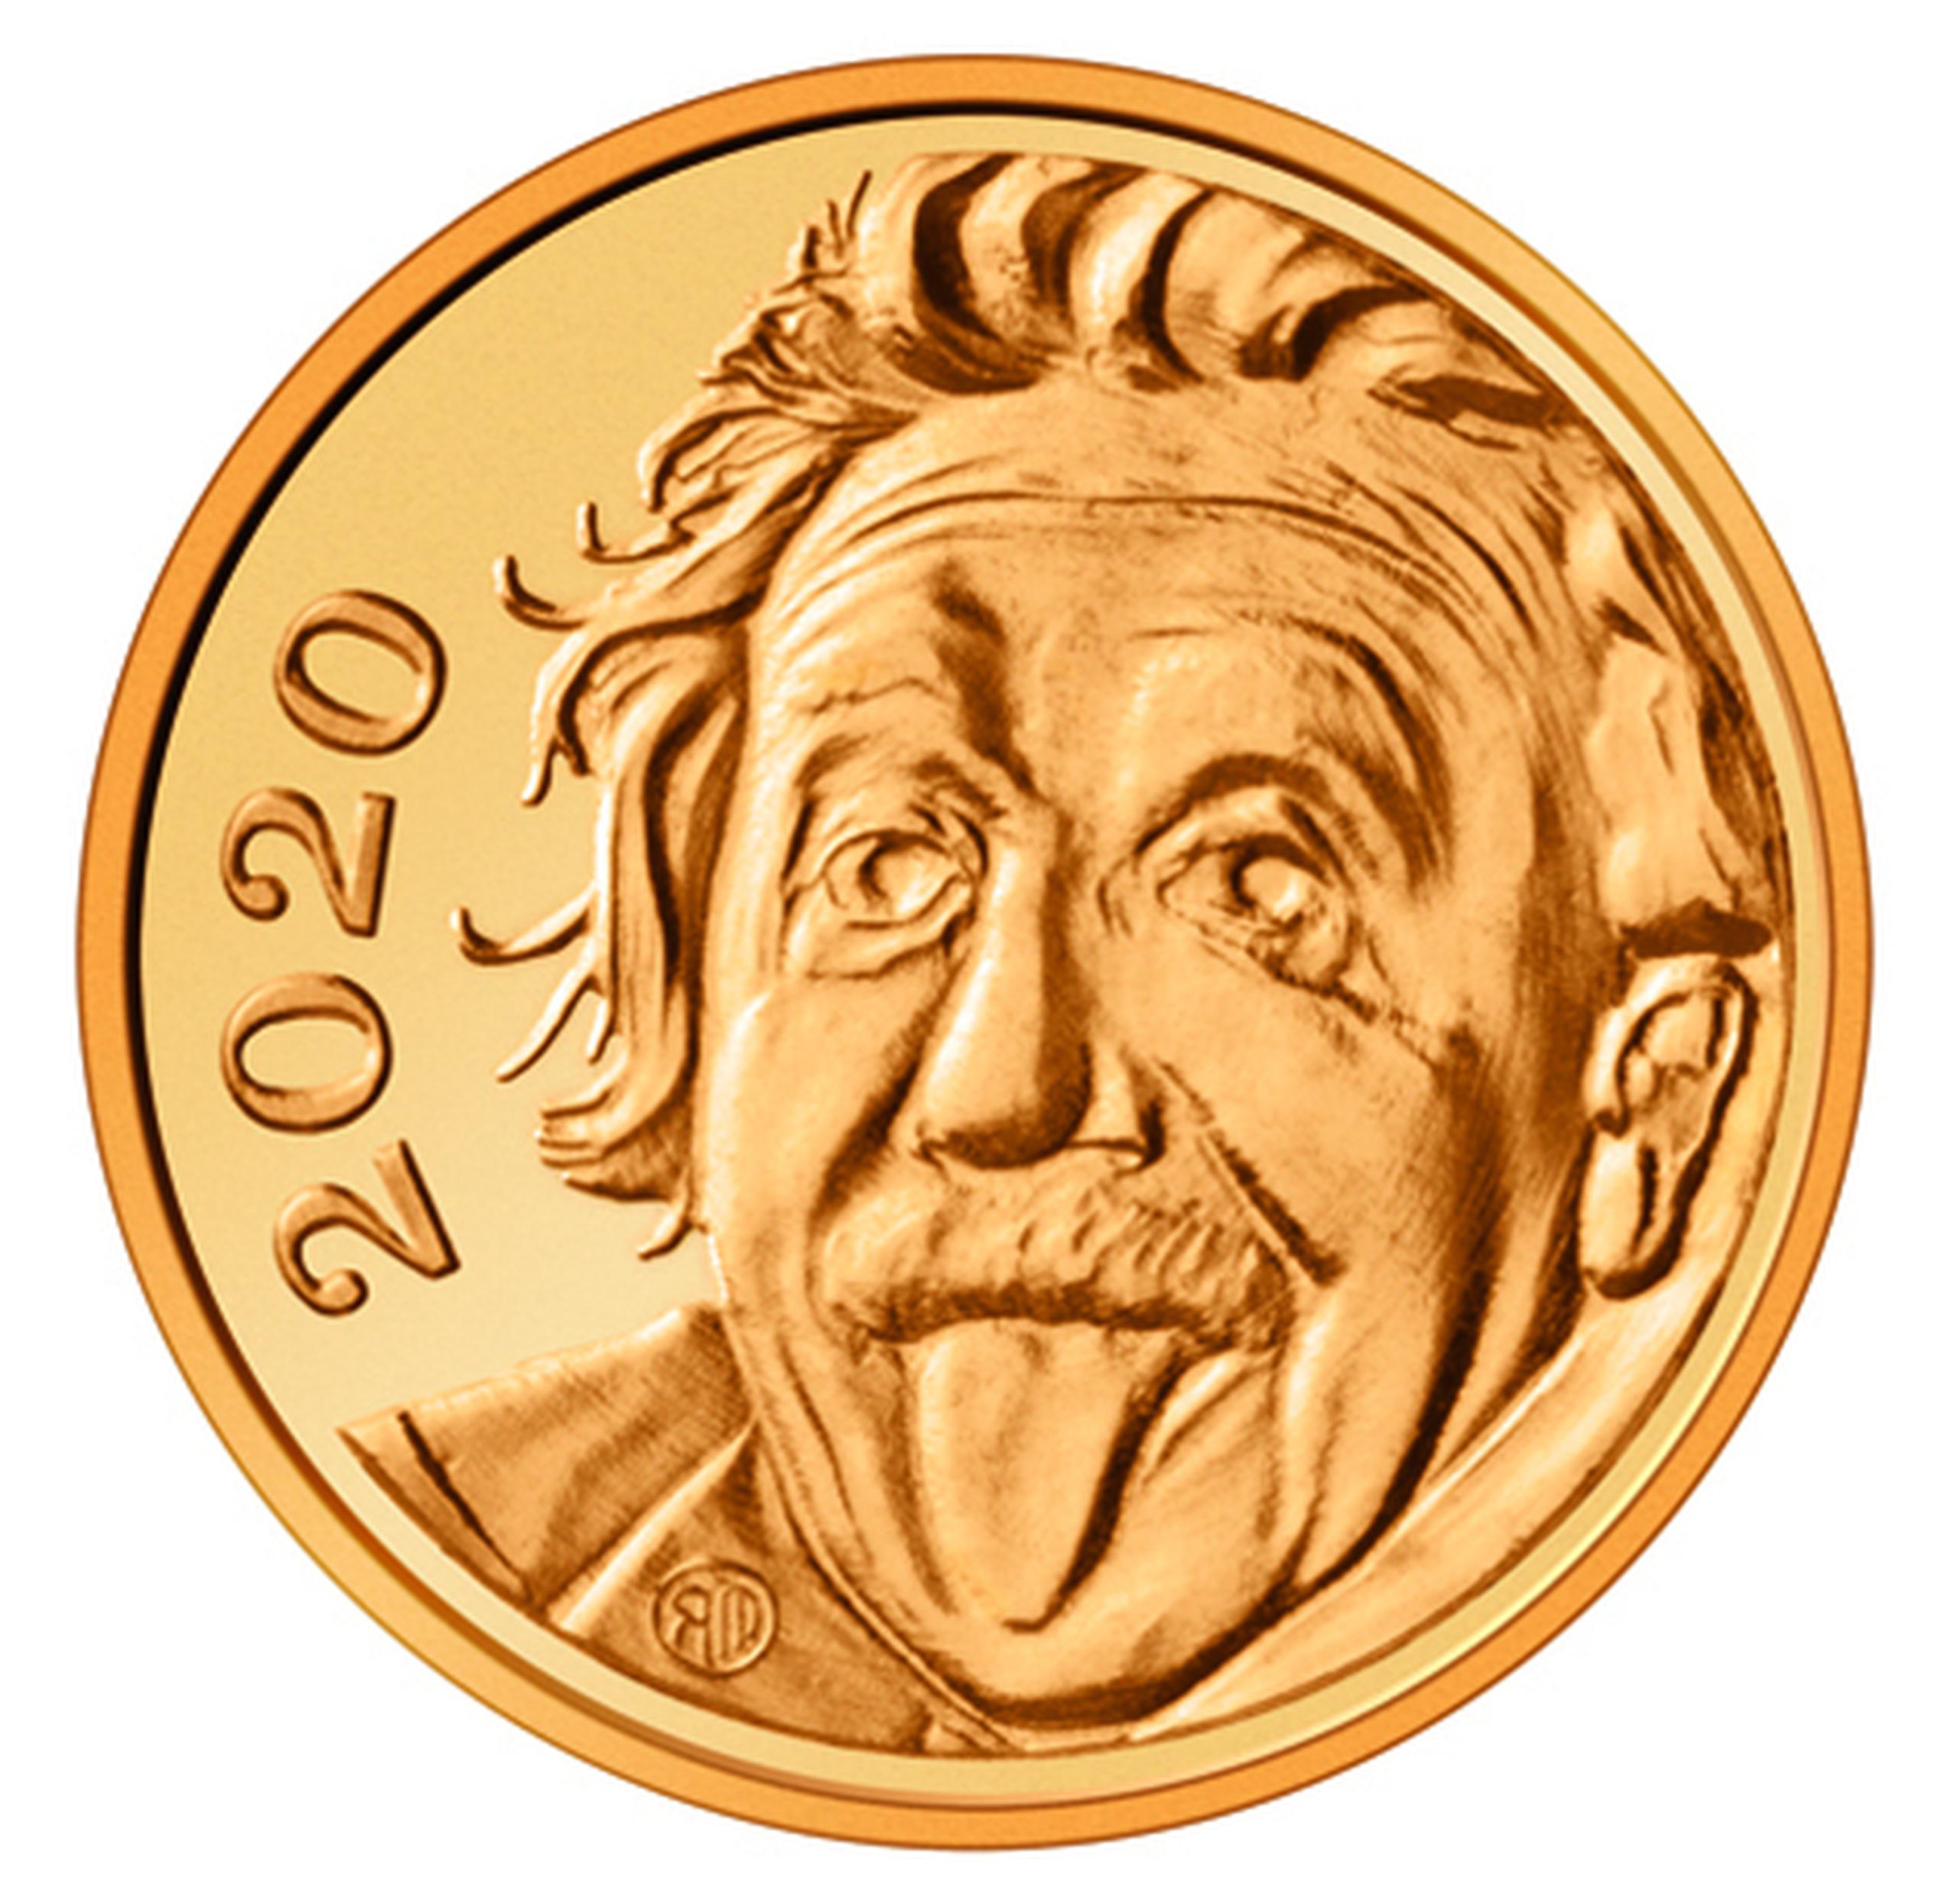 Moneda de oro con la cara de Albert Einstein.